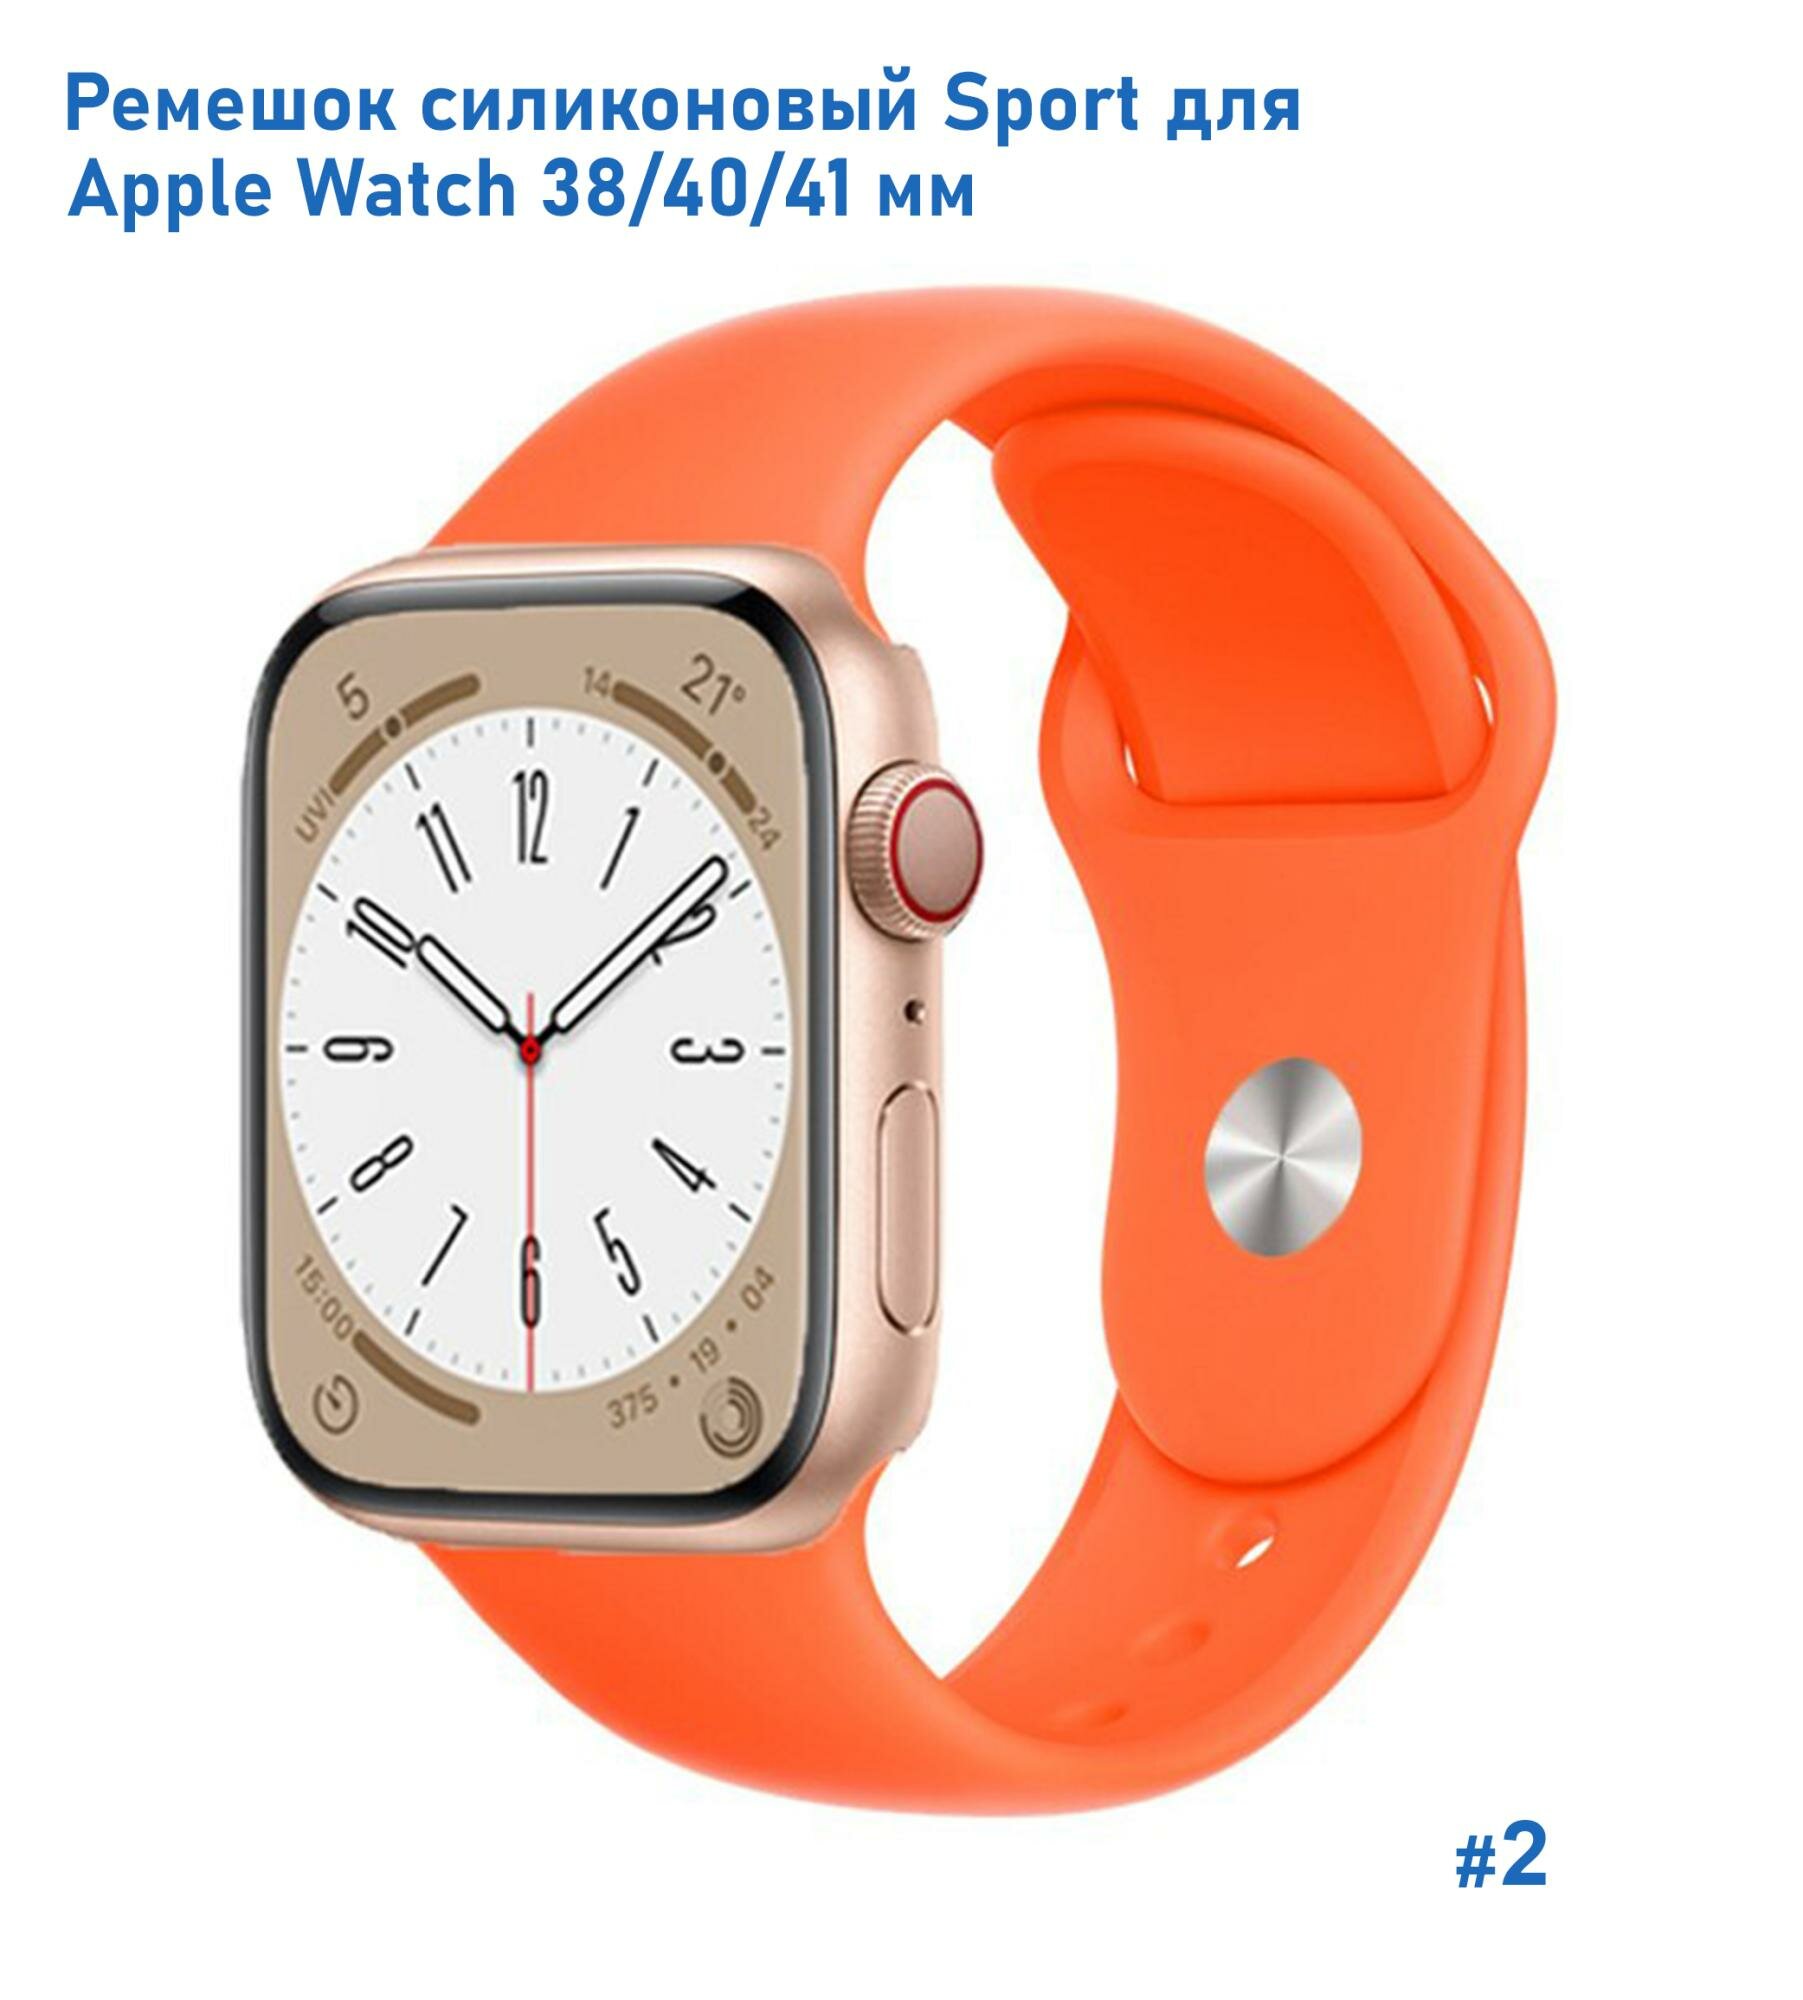 Ремешок силиконовый Sport для Apple Watch 38/40/41 мм, на кнопке, абрикосовый (2)